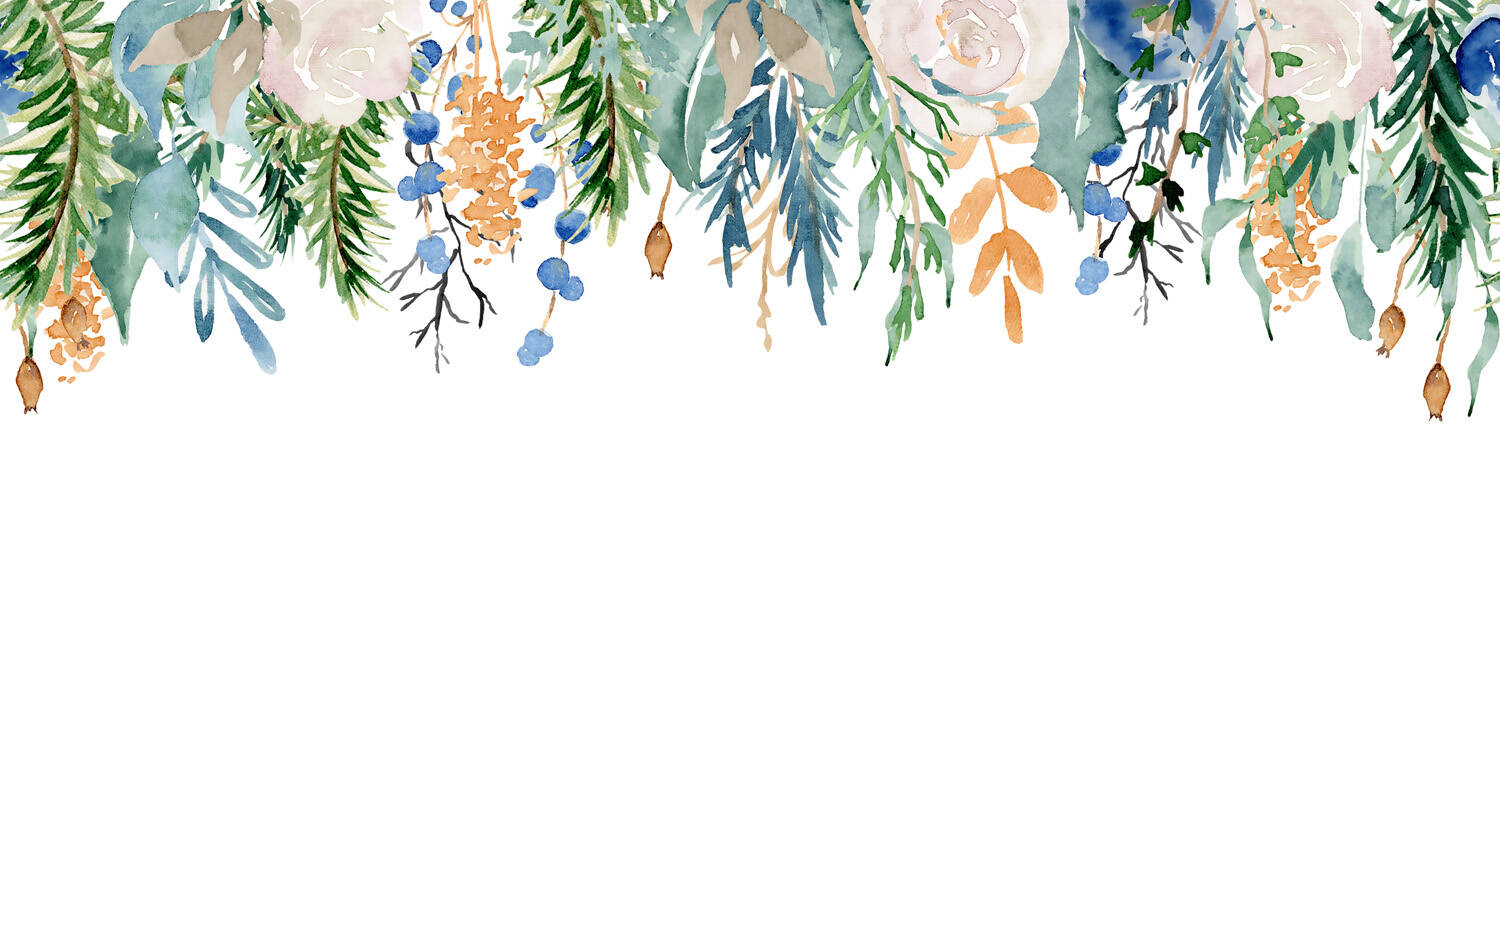 Wandbild - Ein buntes Pflanzendach aus Ranken & Zweigen mit Blüten & Früchten kräfitg coloriert in grün, blau & orange